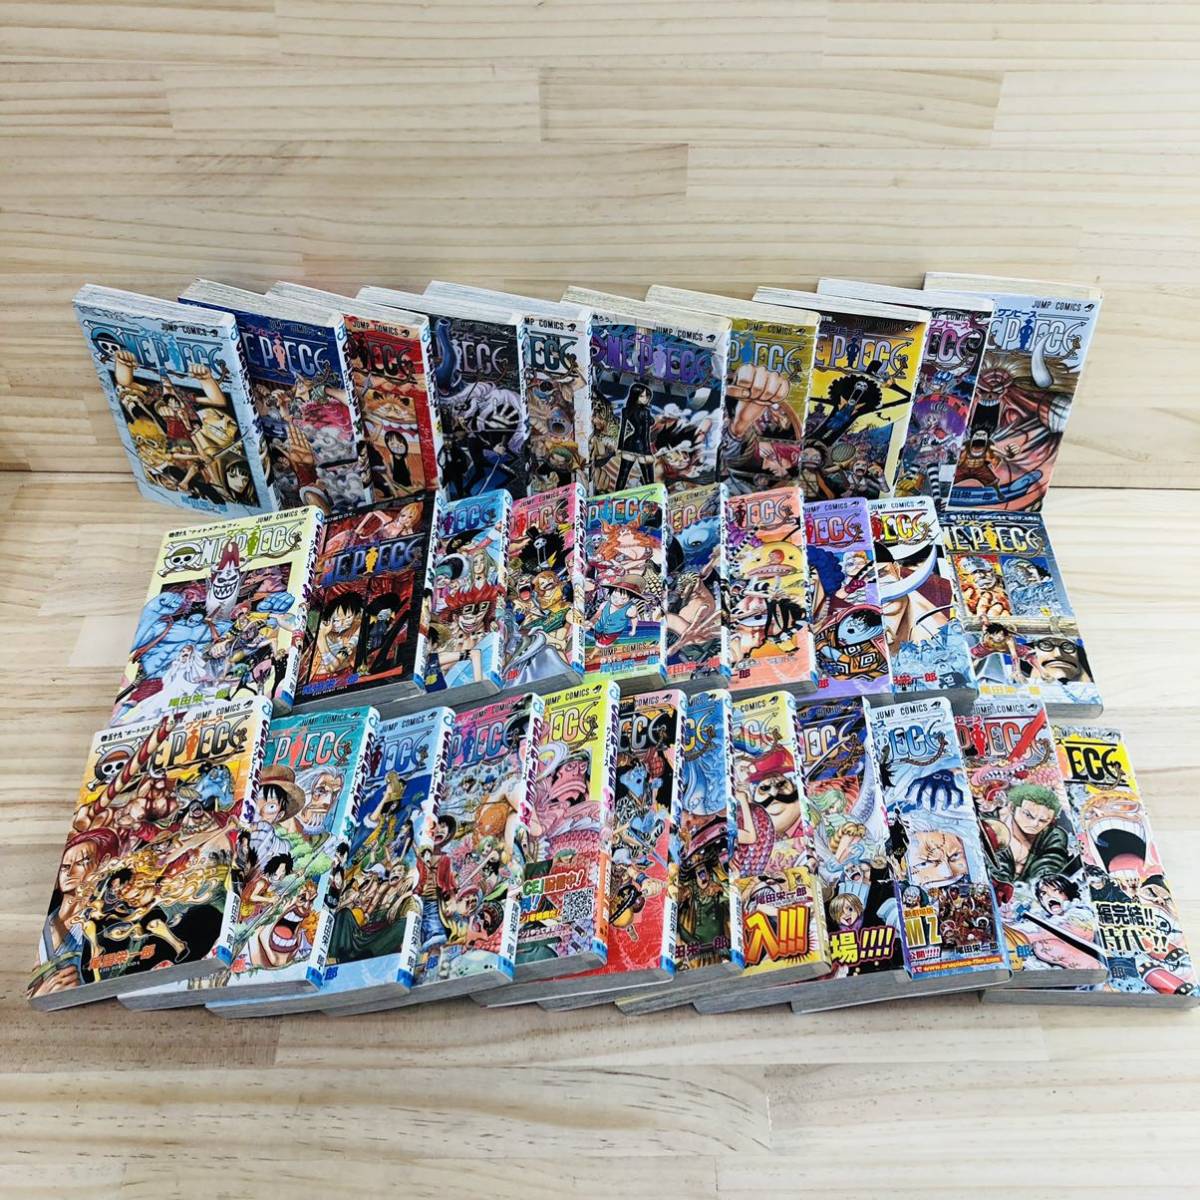 Ak ワンピース One Piece 39巻 70巻 32巻セット 尾田栄一郎 少年 売買されたオークション情報 Yahooの商品情報をアーカイブ公開 オークファン Aucfan Com